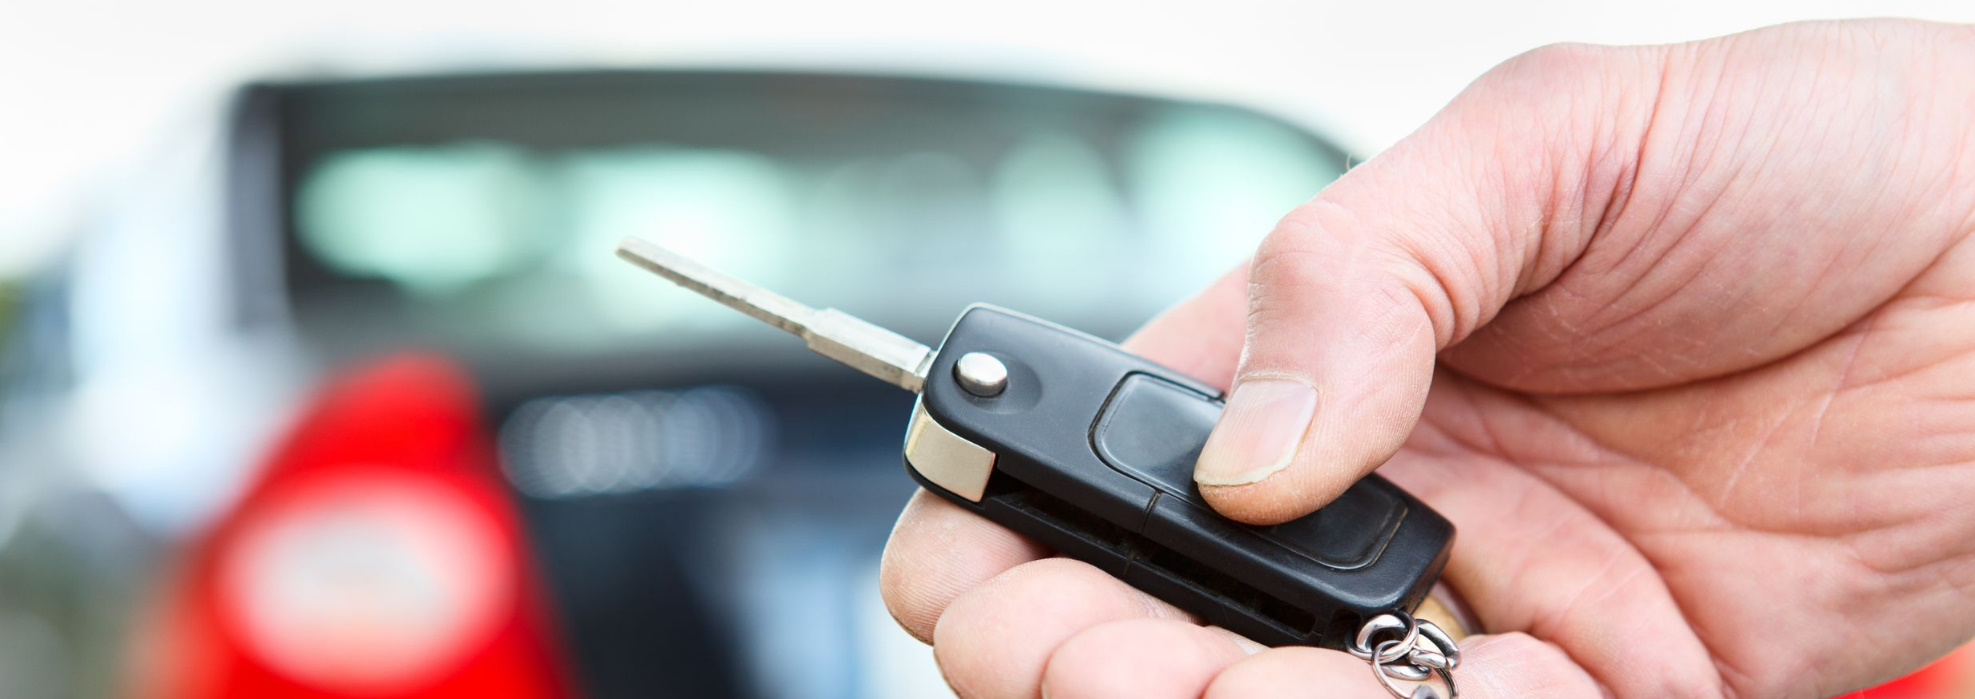 Bild zeigt eine Hand mit einem Autoschlüssel eines Mietwagens